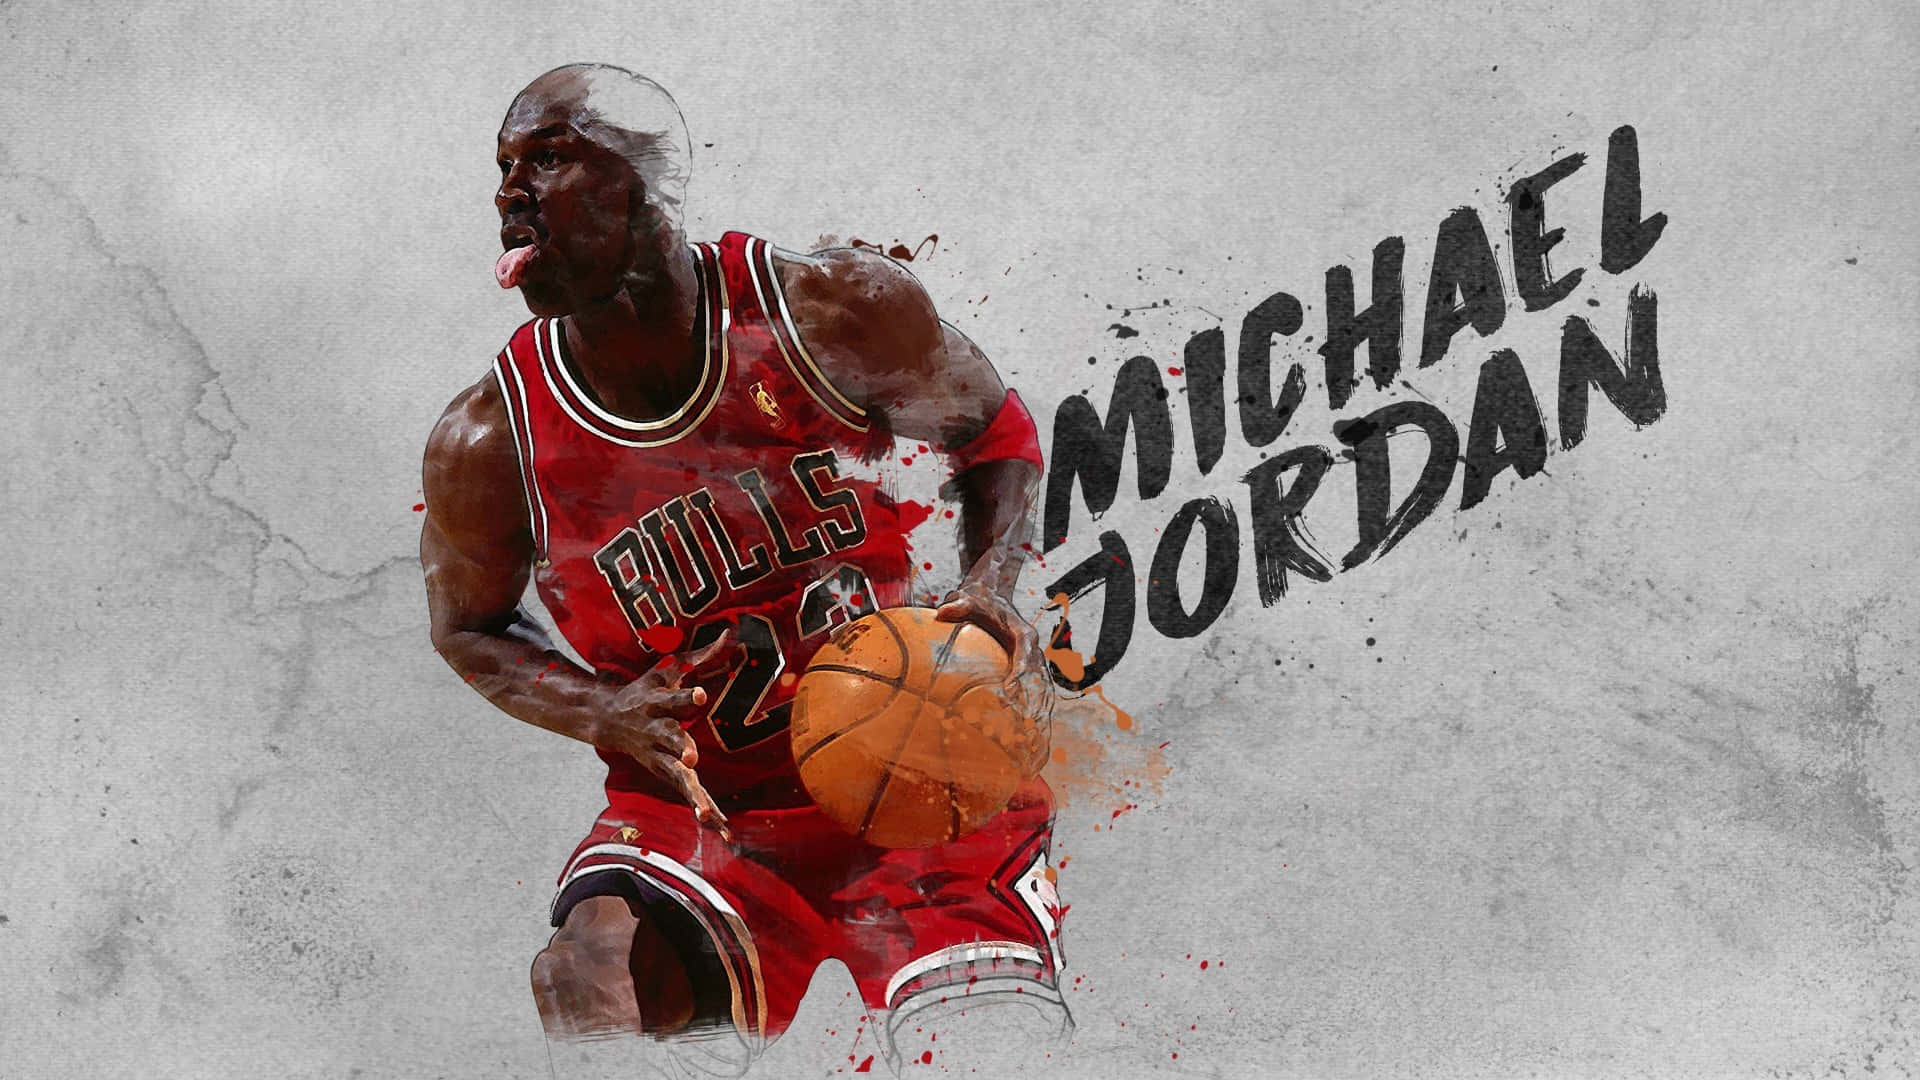 Michael Jordan Basketball Legend Wallpaper